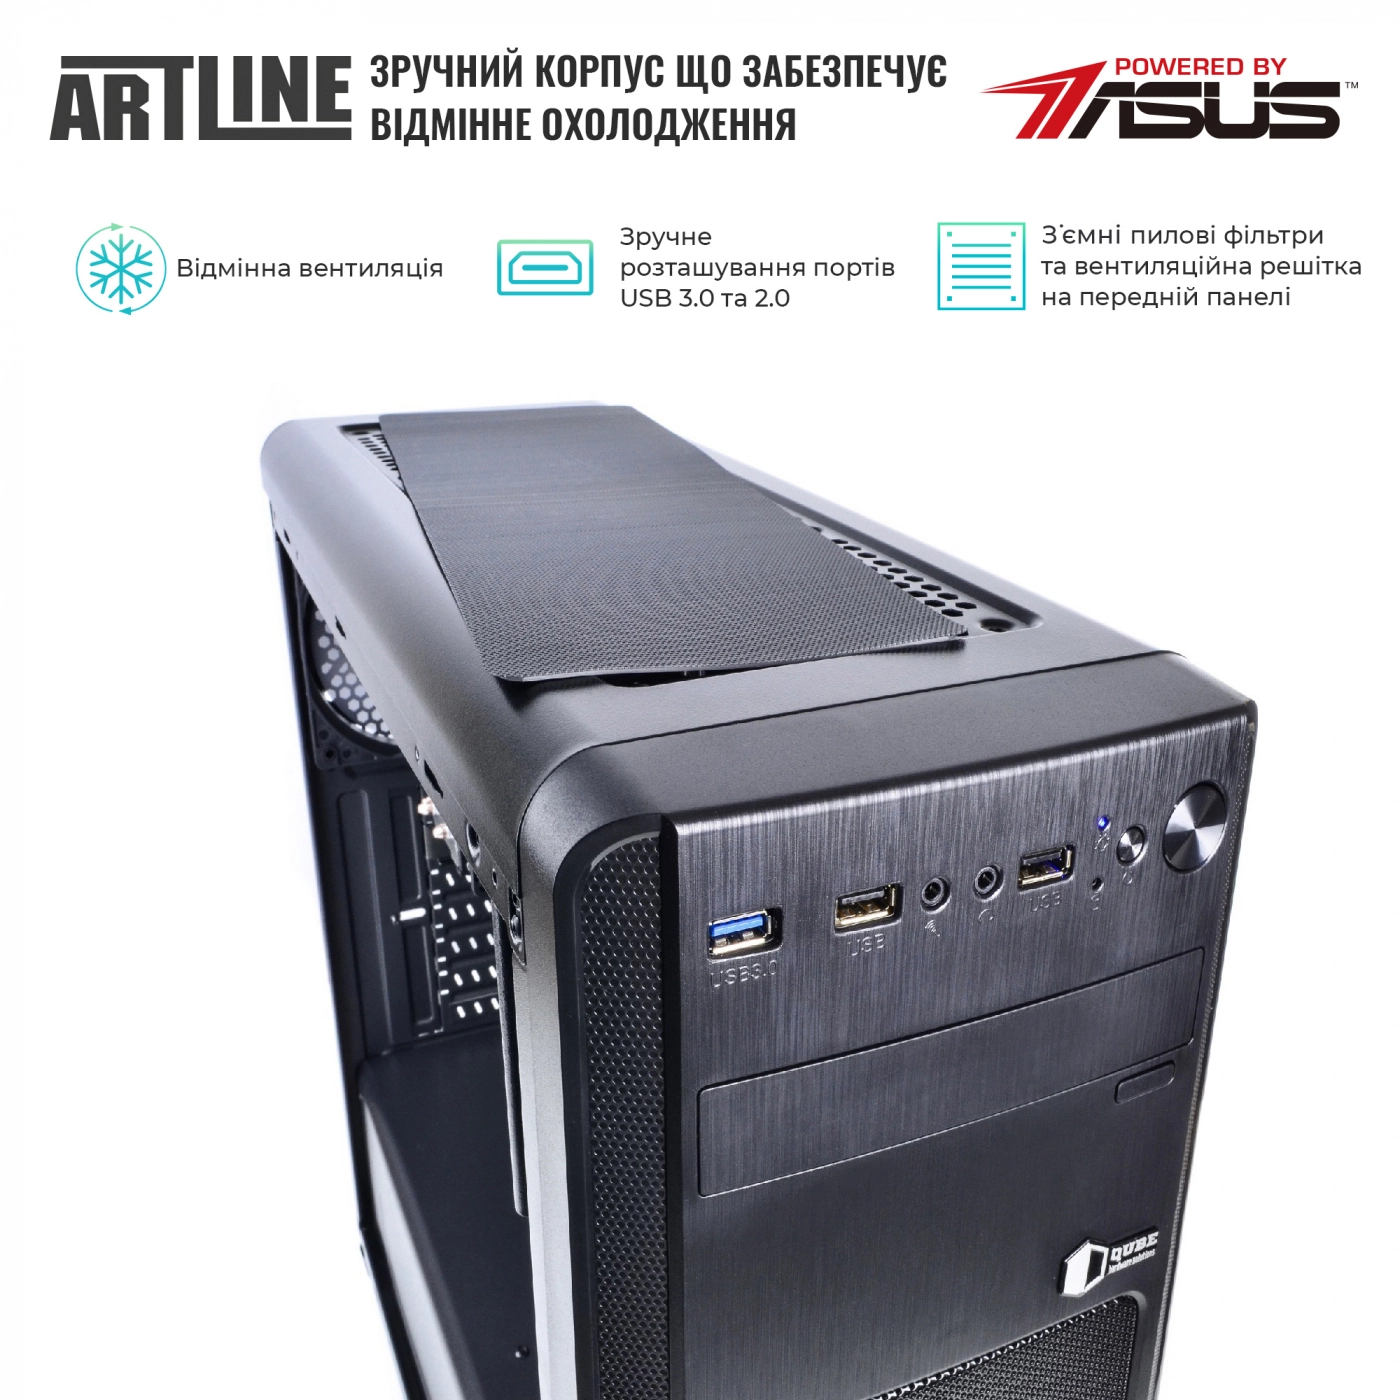 Купить Сервер ARTLINE Business T27v15 - фото 4